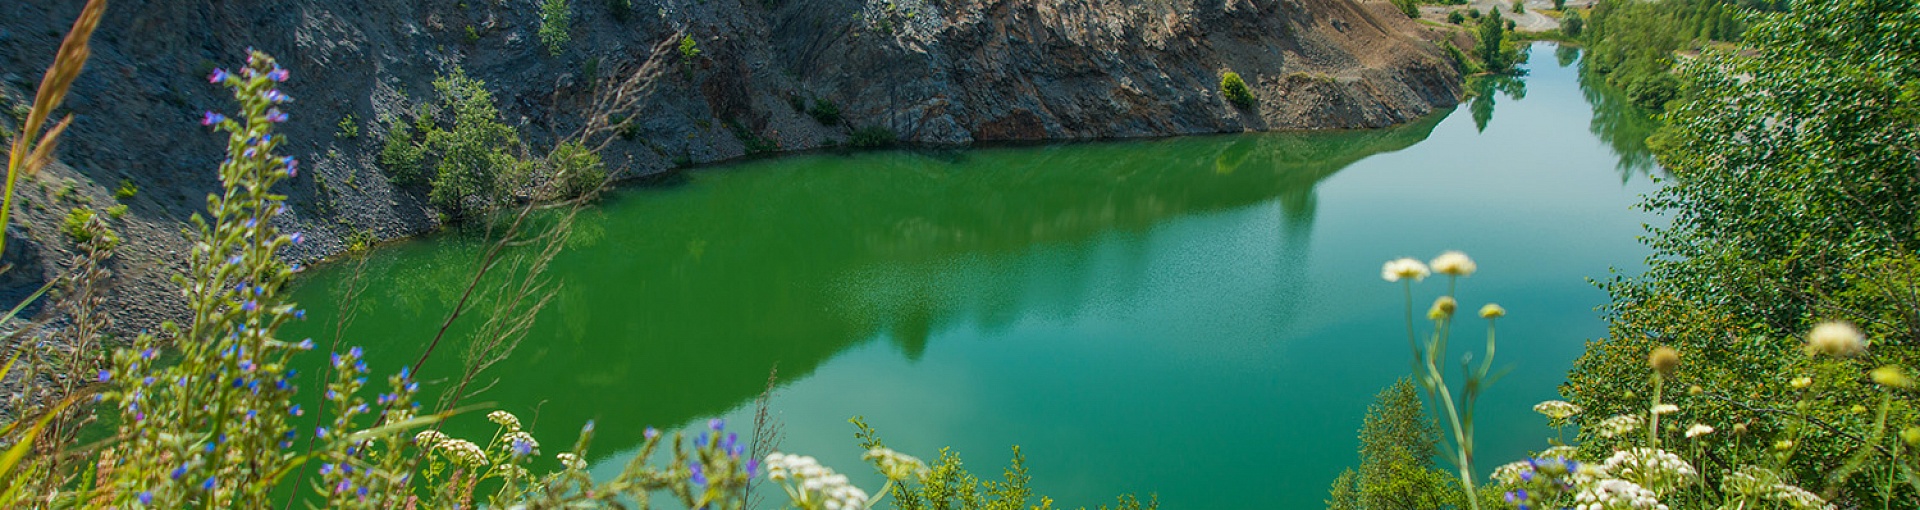 Озеро Голубое: описание, фото, месторасположение, как добраться .